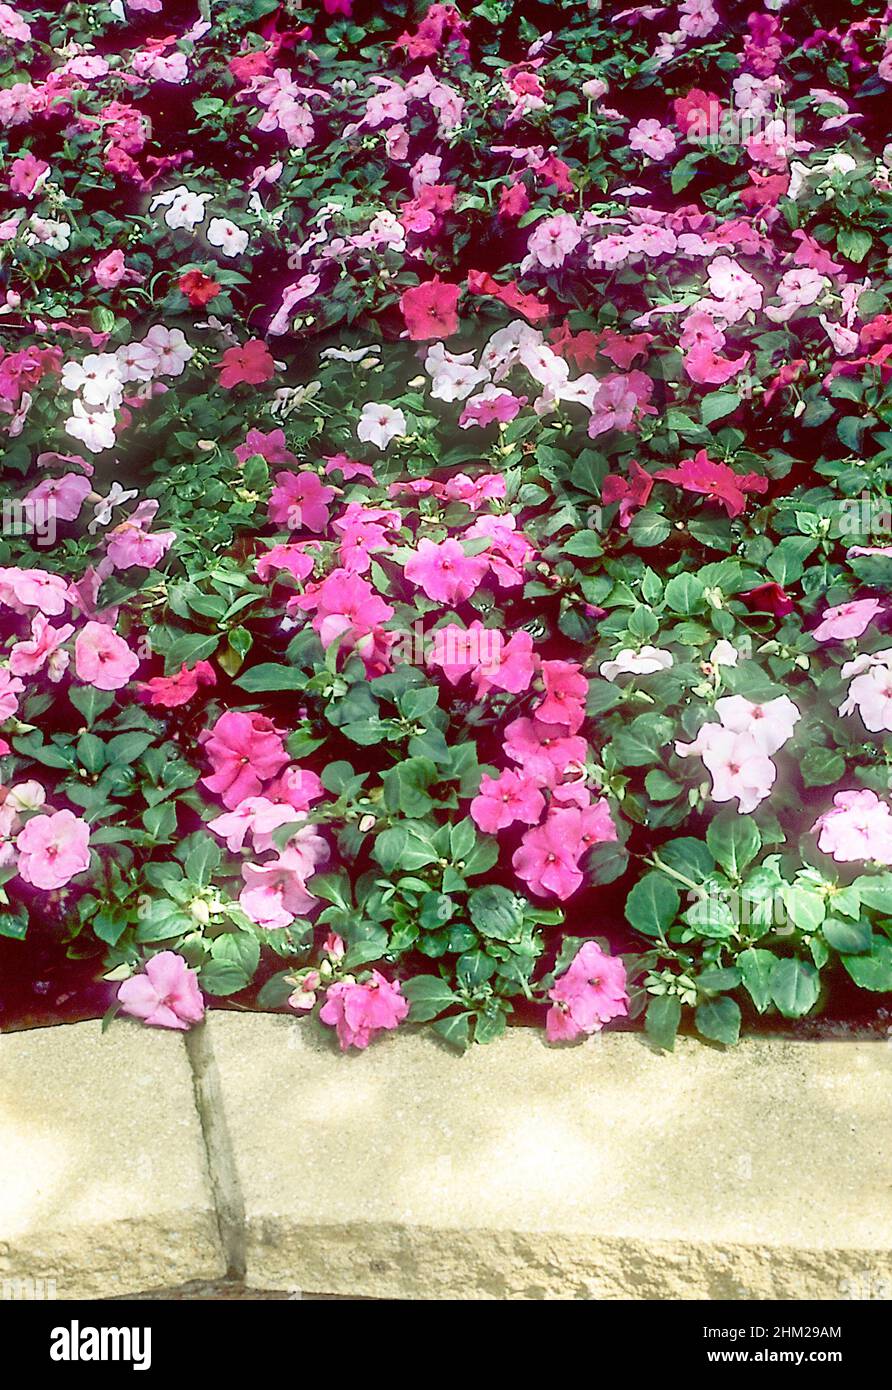 Impatiens Busy Lizzie F1 accento mistico in colori misti di rosso rosa viola e bianco crescente in un letto di fiori rialzato in estate Foto Stock